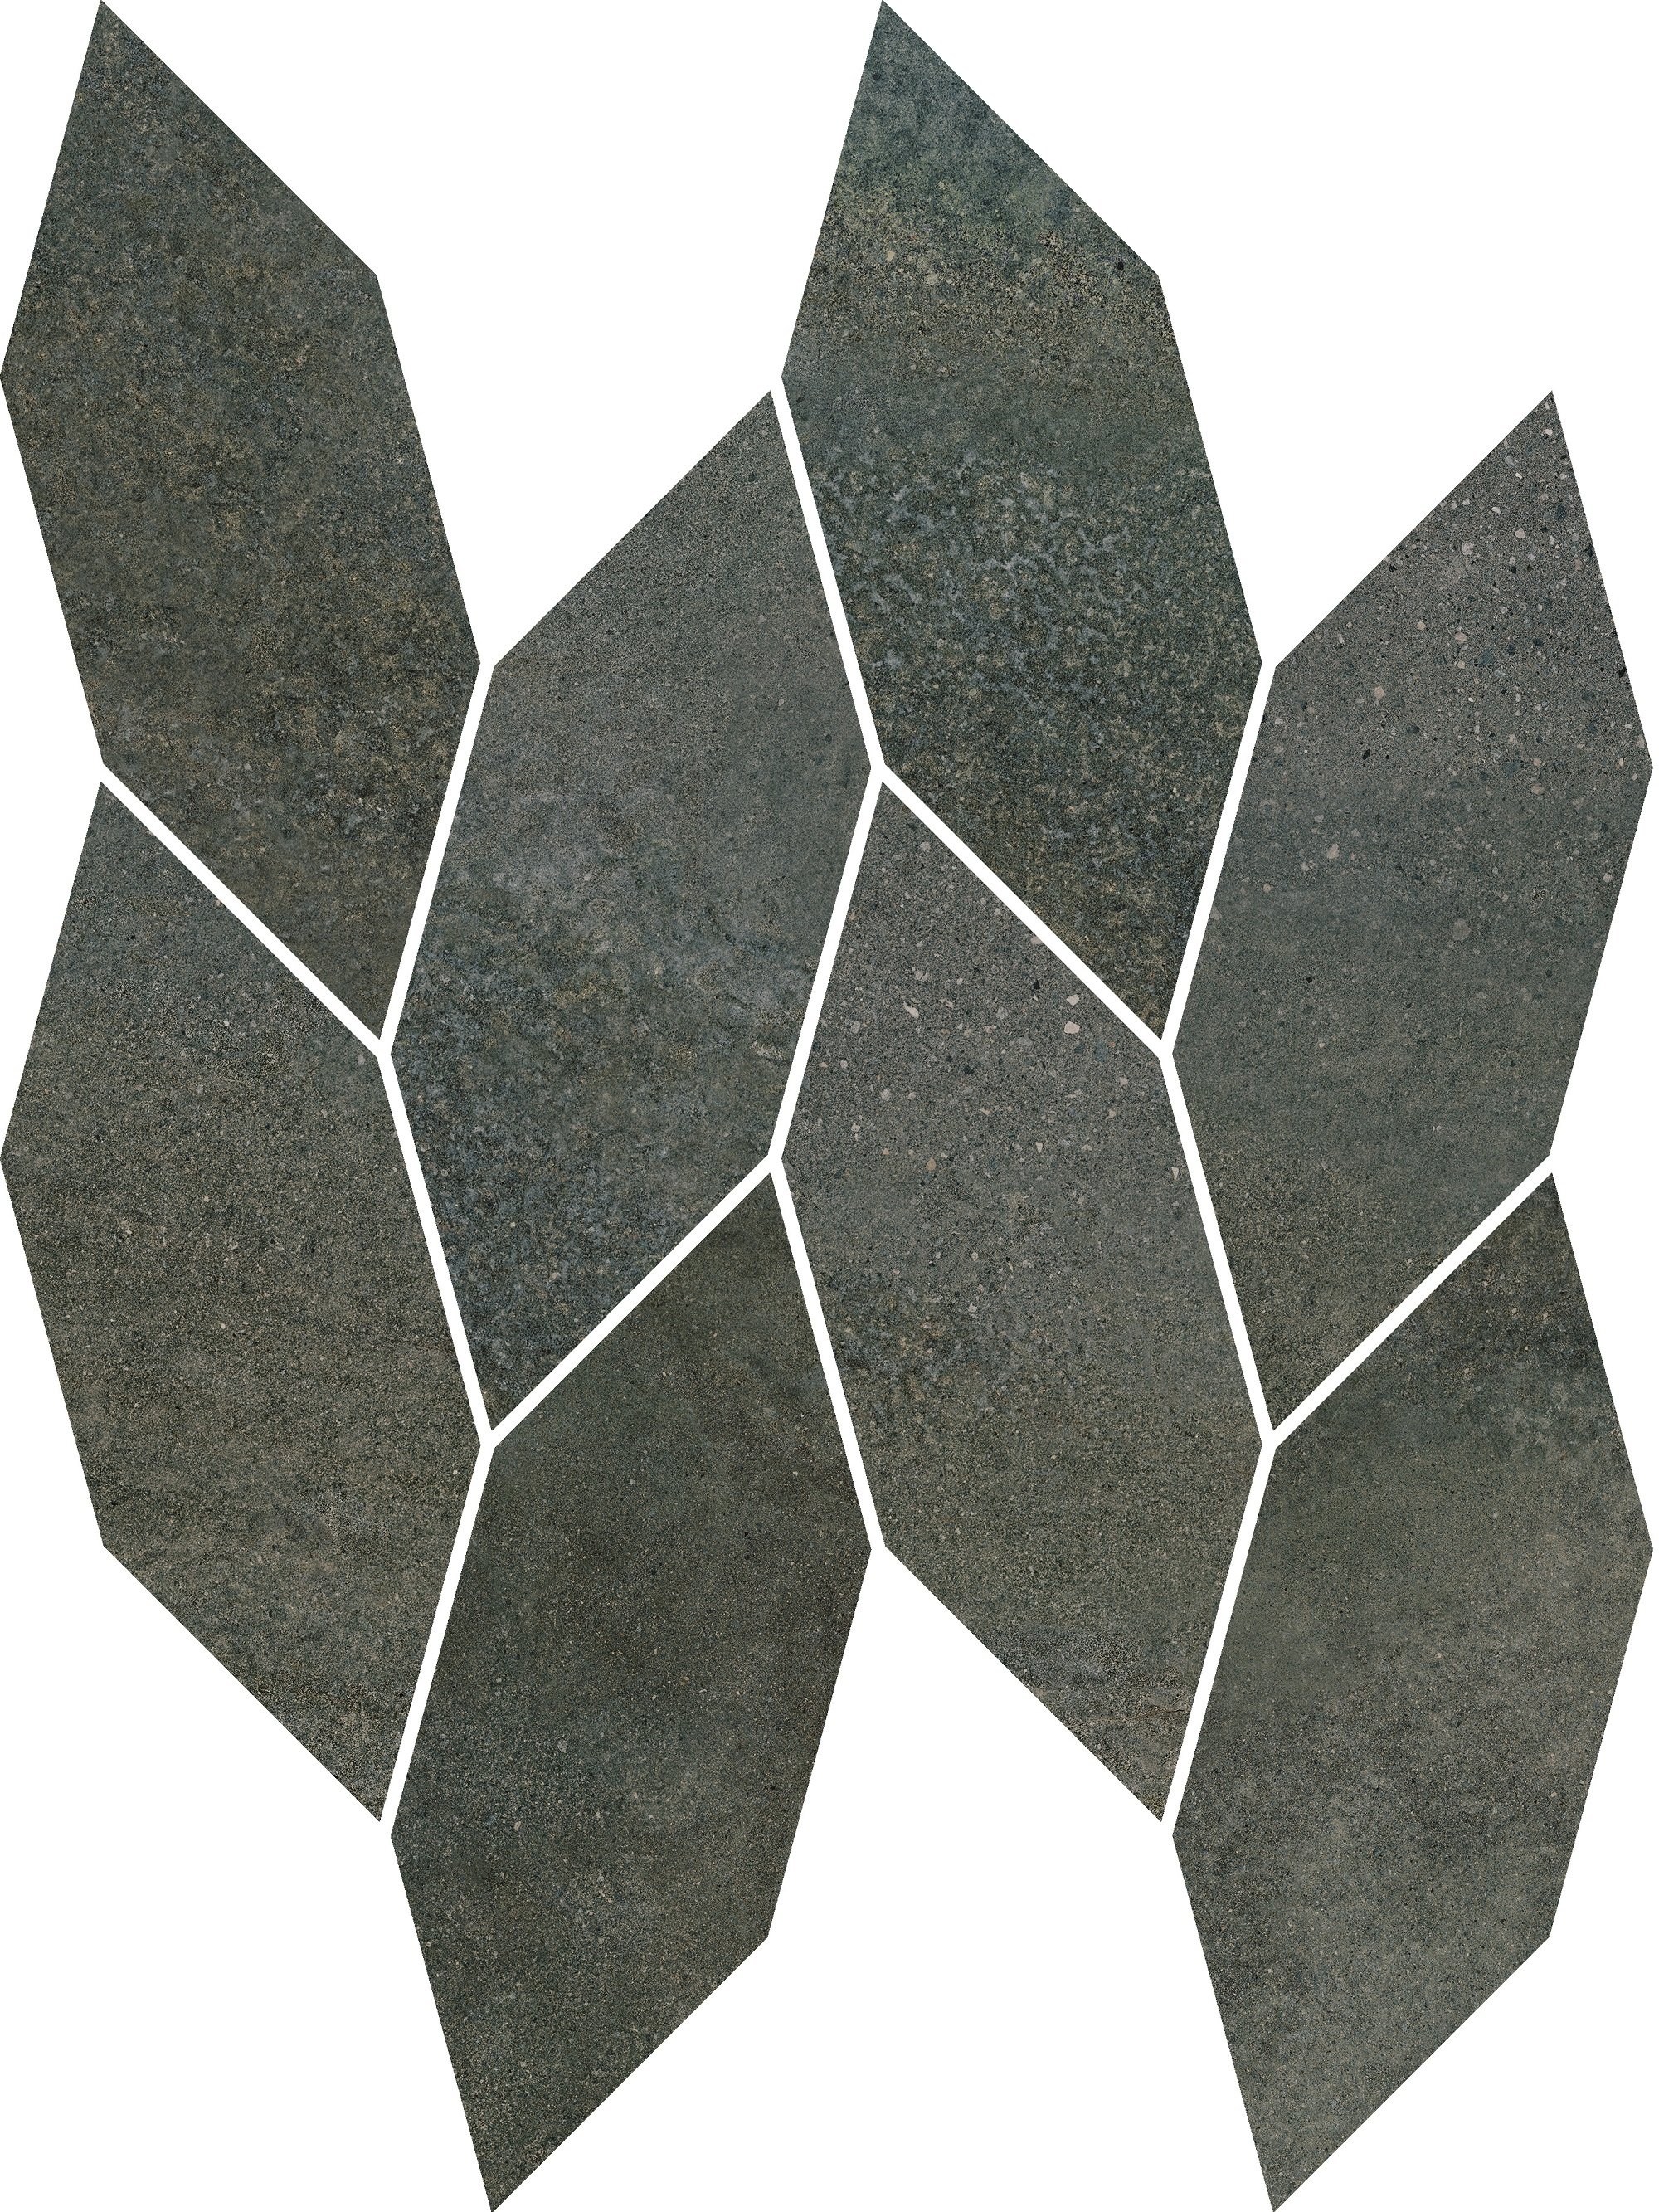 Smoothstone umbra mozaika cięta satyna - obkládačka mozaika 22,3x29,8 šedá 159911